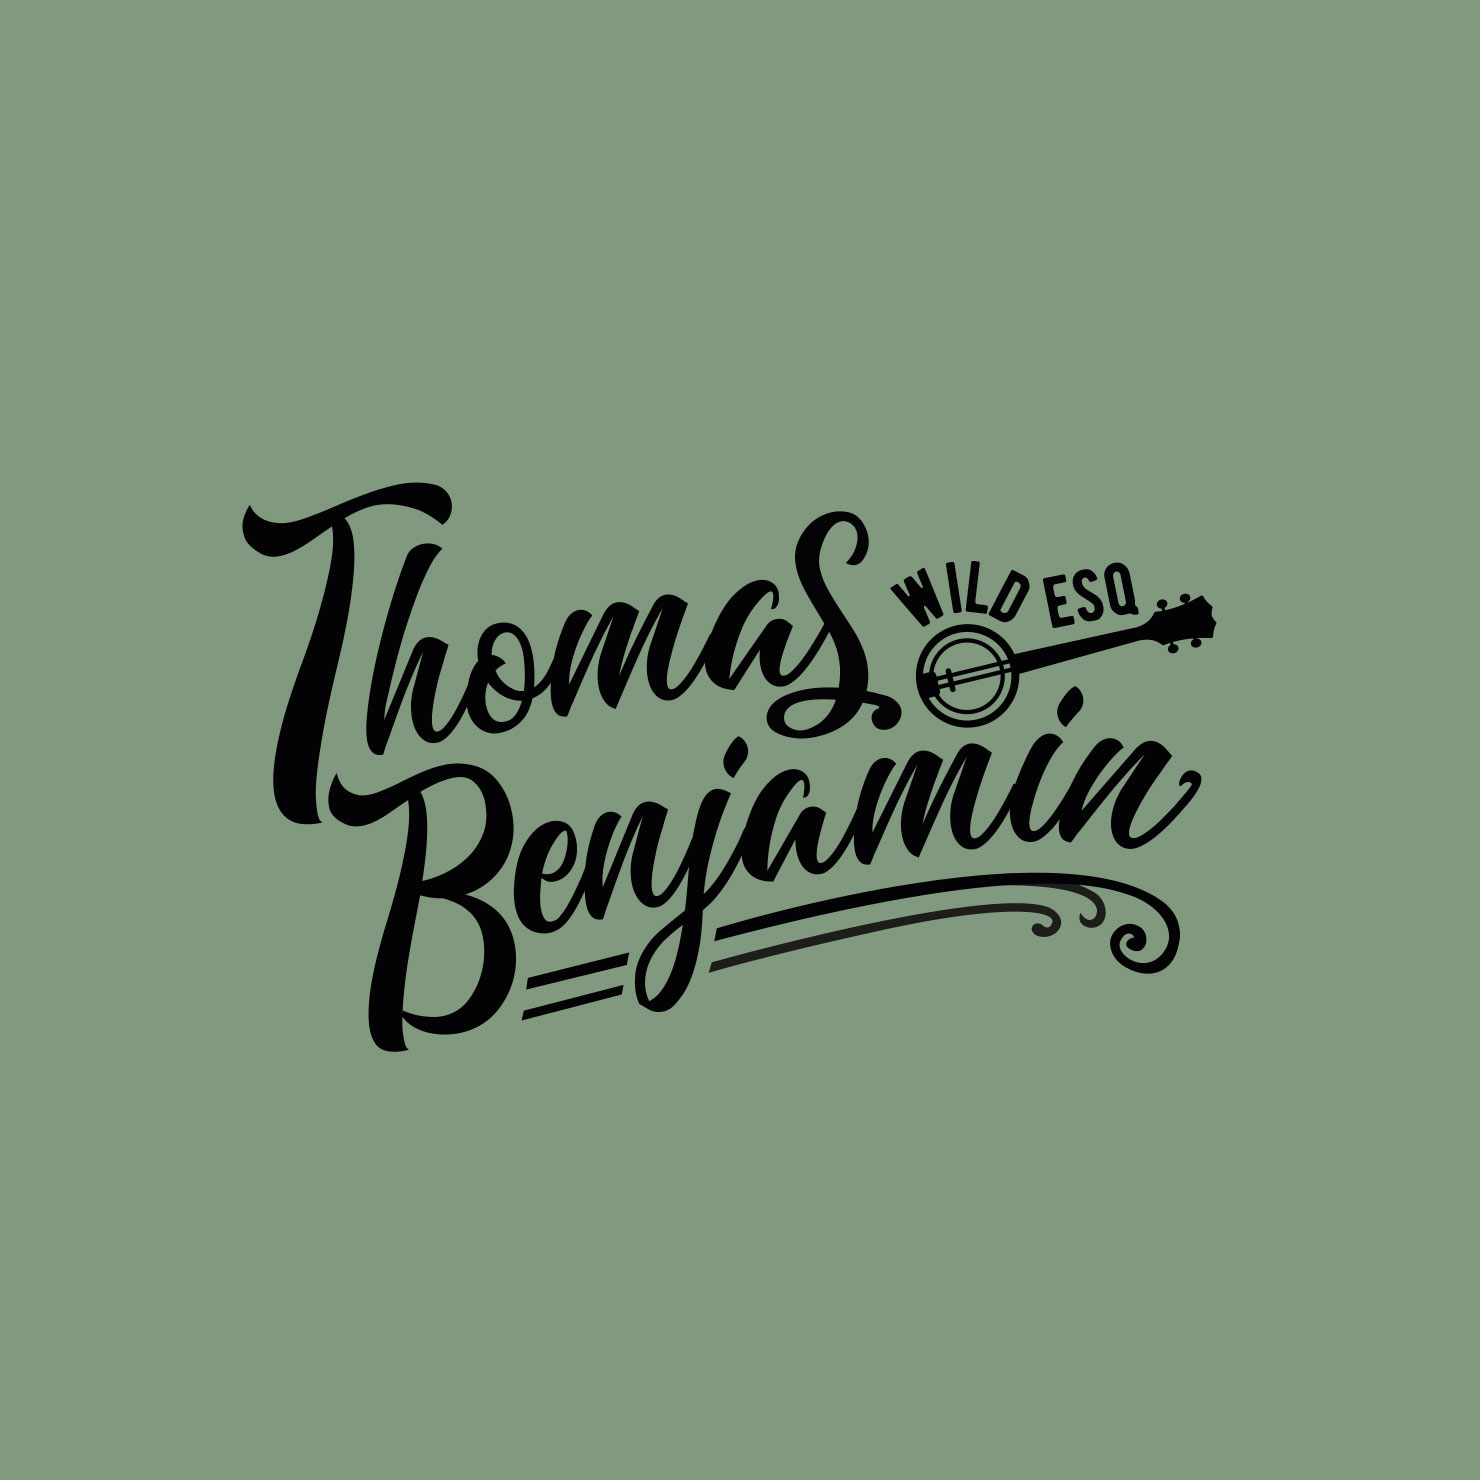 Thomas Benjamin Wild Esq